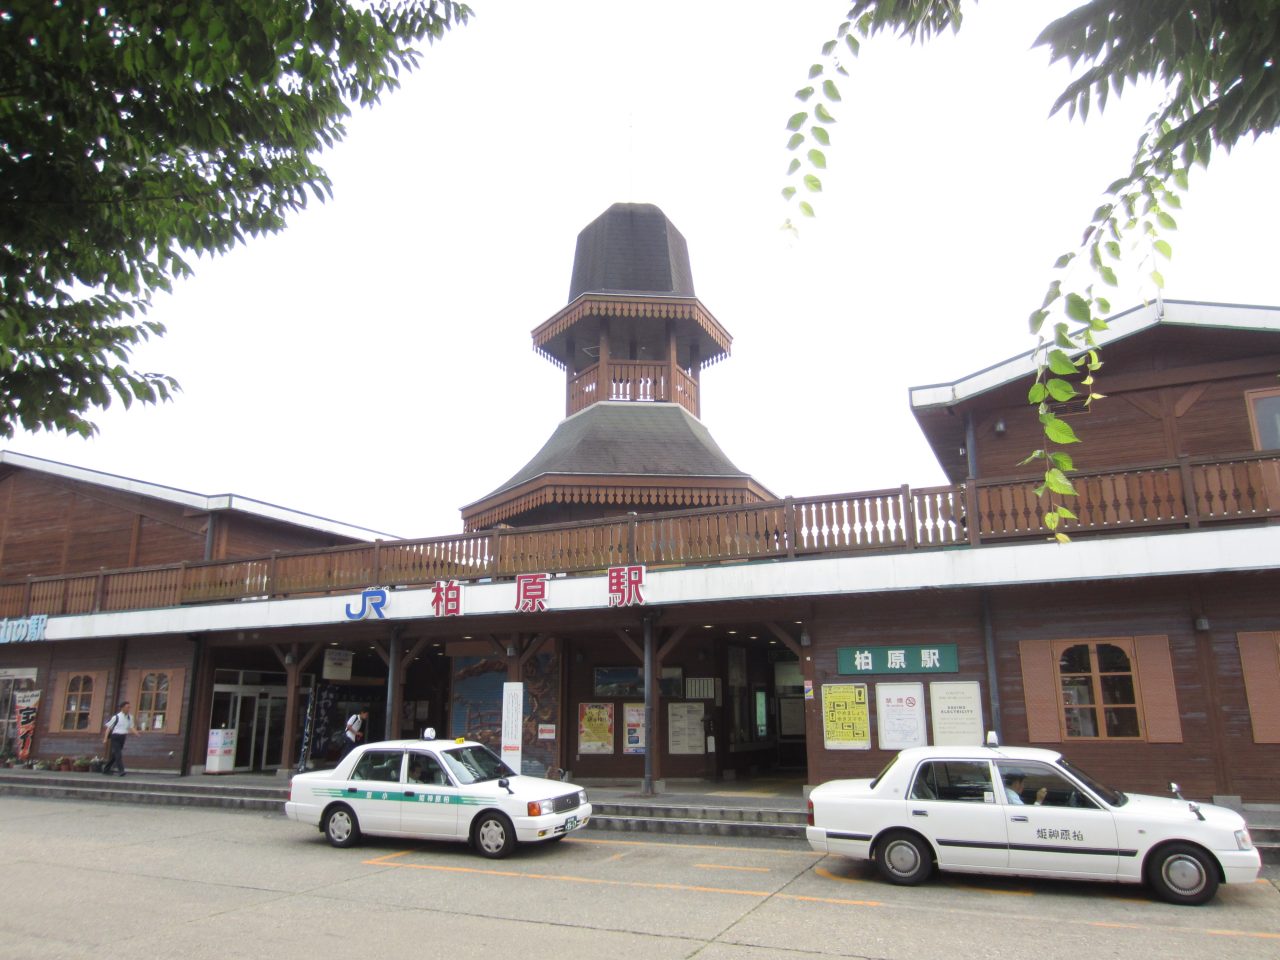 JR 柏原(かいばら)駅